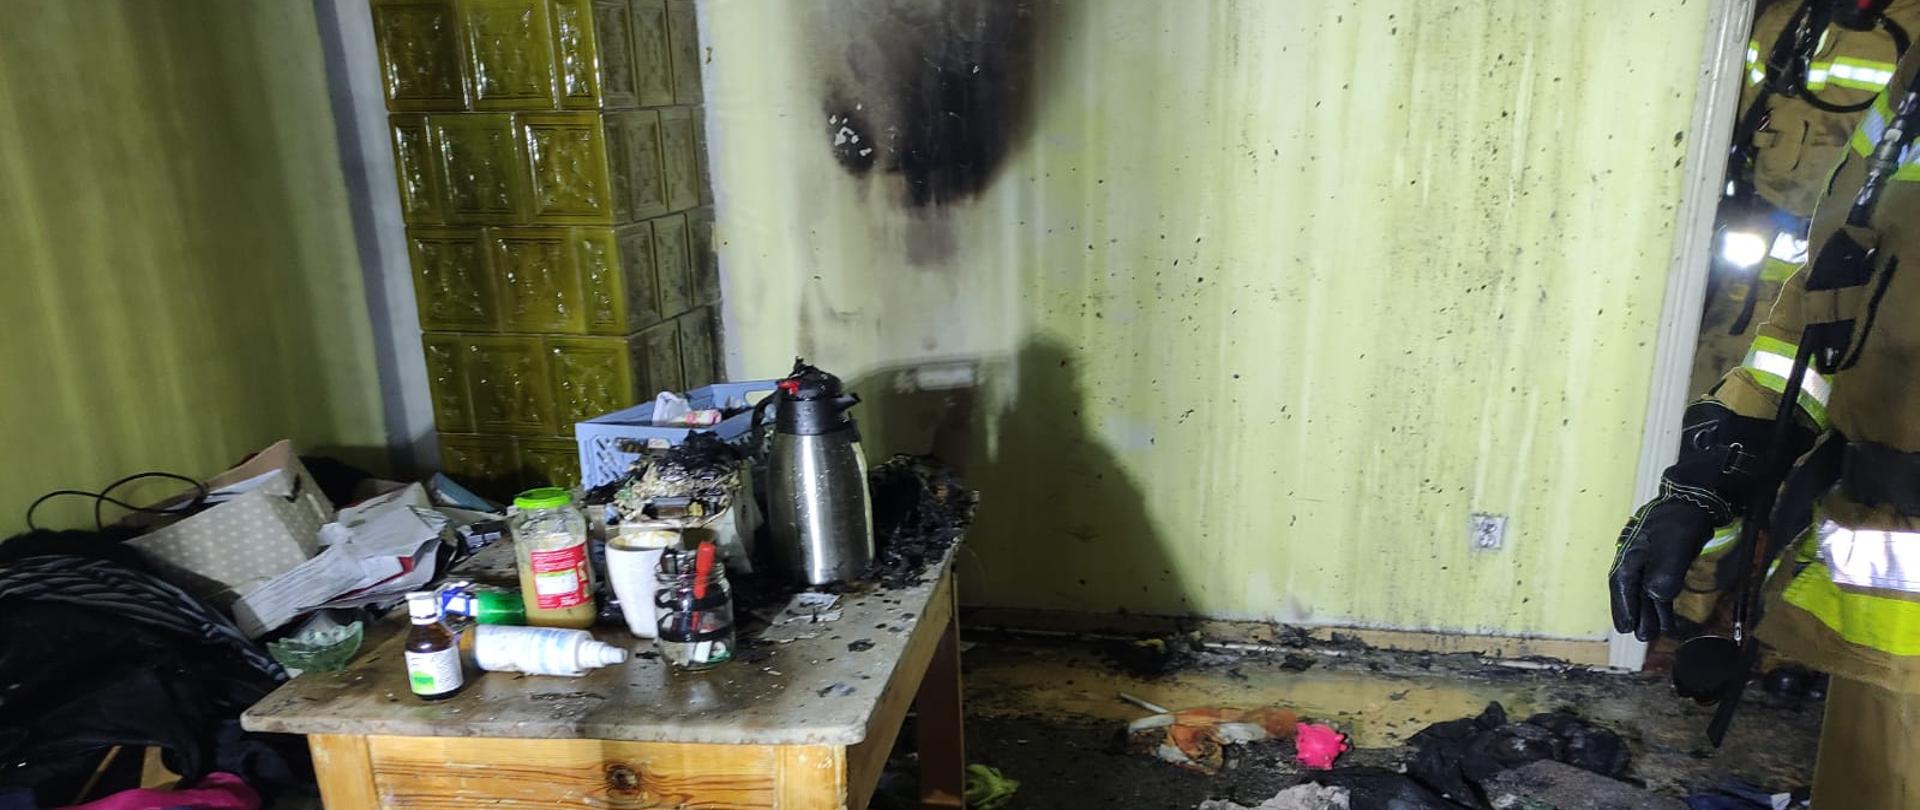 Wnętrze pokoju z osmaloną dymem ścianą oraz resztkami popożarowymi na podłodze.